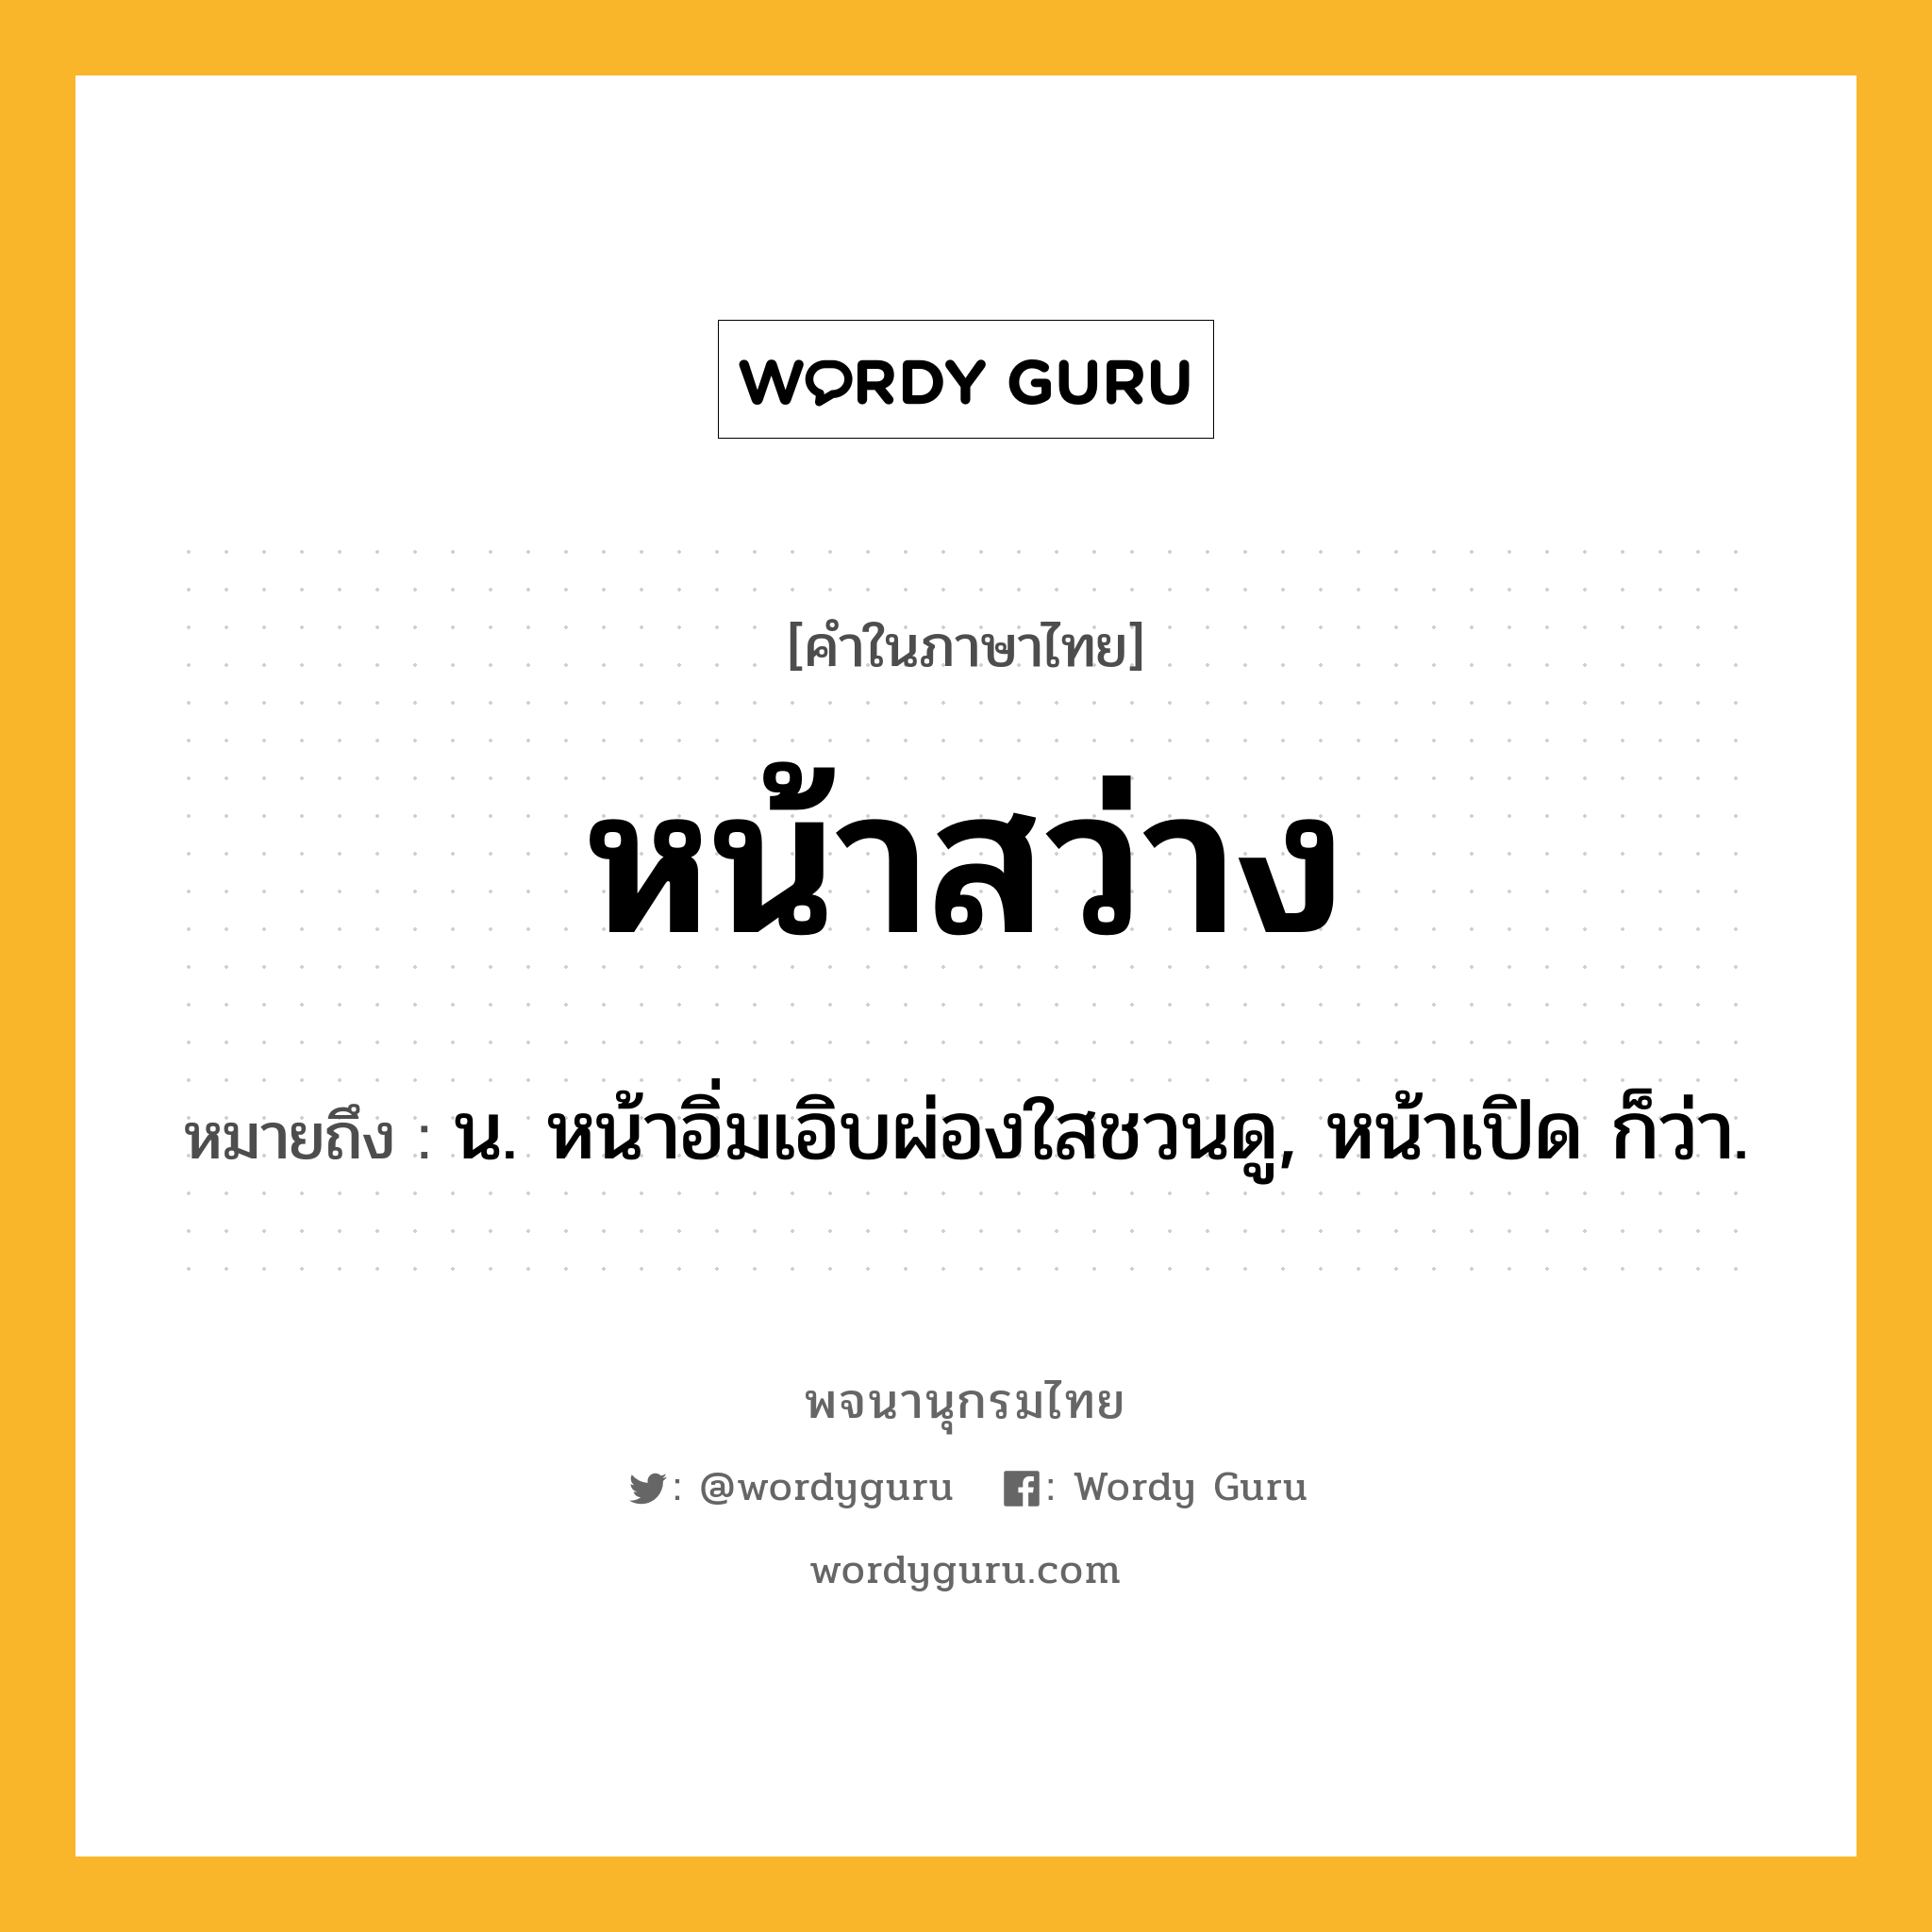 หน้าสว่าง ความหมาย หมายถึงอะไร?, คำในภาษาไทย หน้าสว่าง หมายถึง น. หน้าอิ่มเอิบผ่องใสชวนดู, หน้าเปิด ก็ว่า.